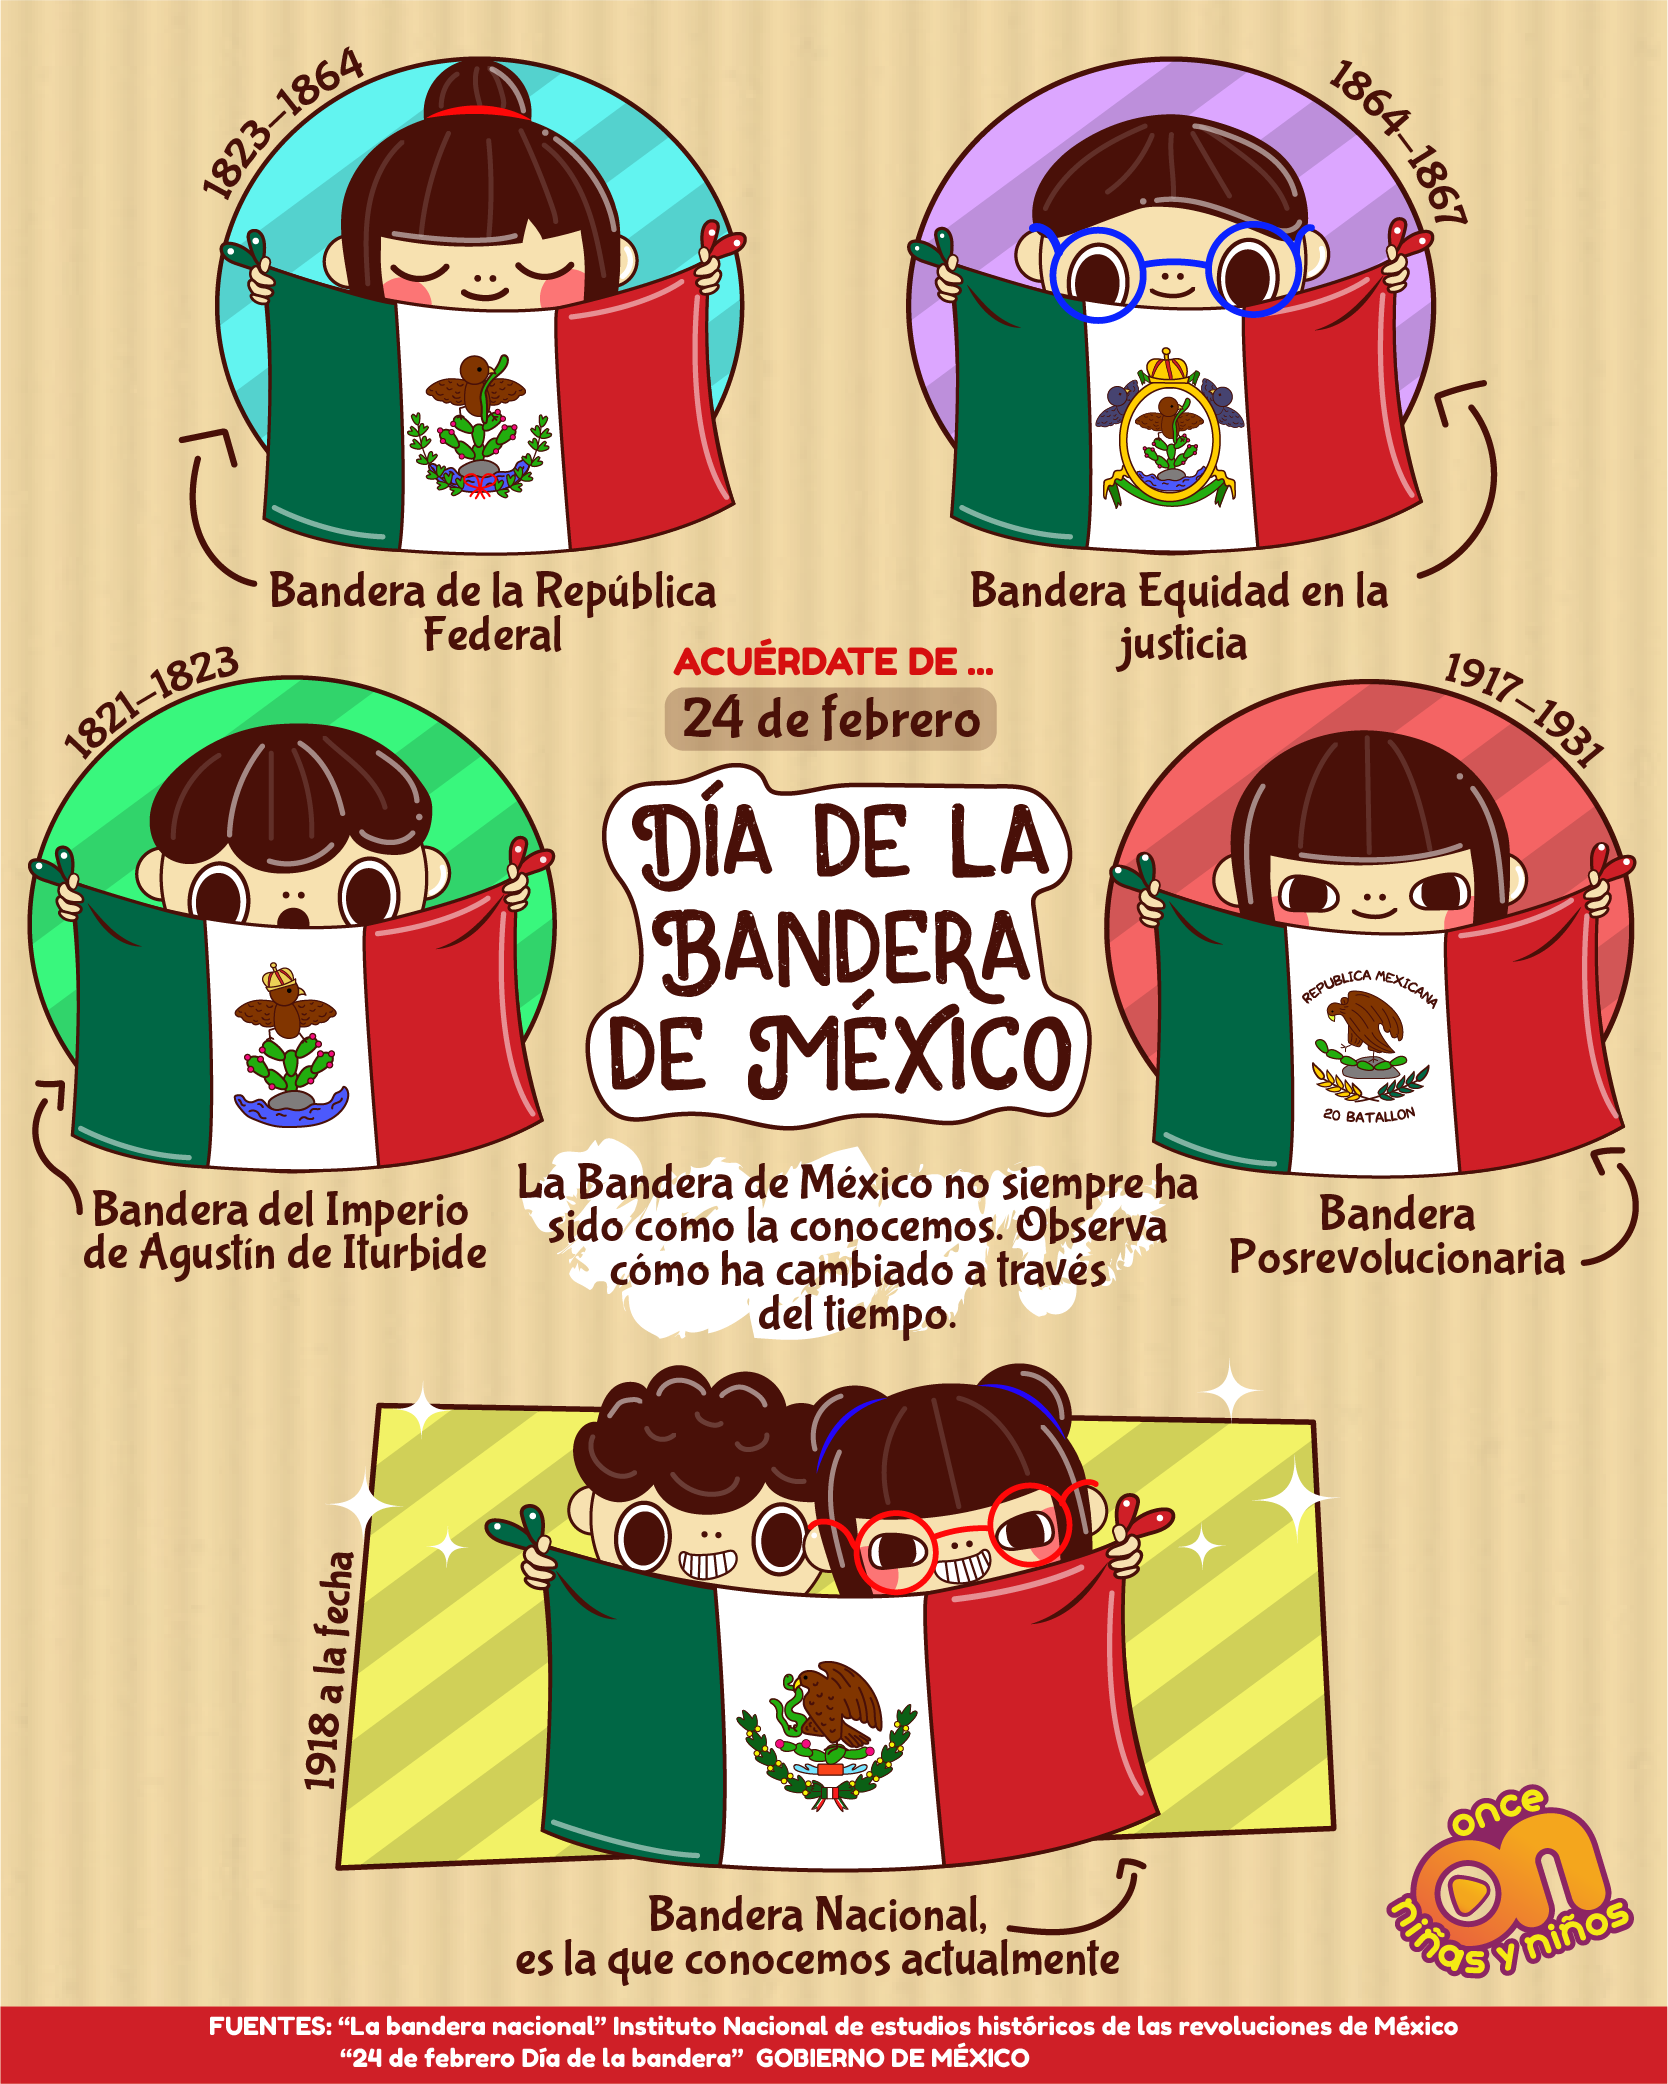 Día de la Bandera de México
24 de febrero 
Once Niñas y Niños 
Acuérdate de... 